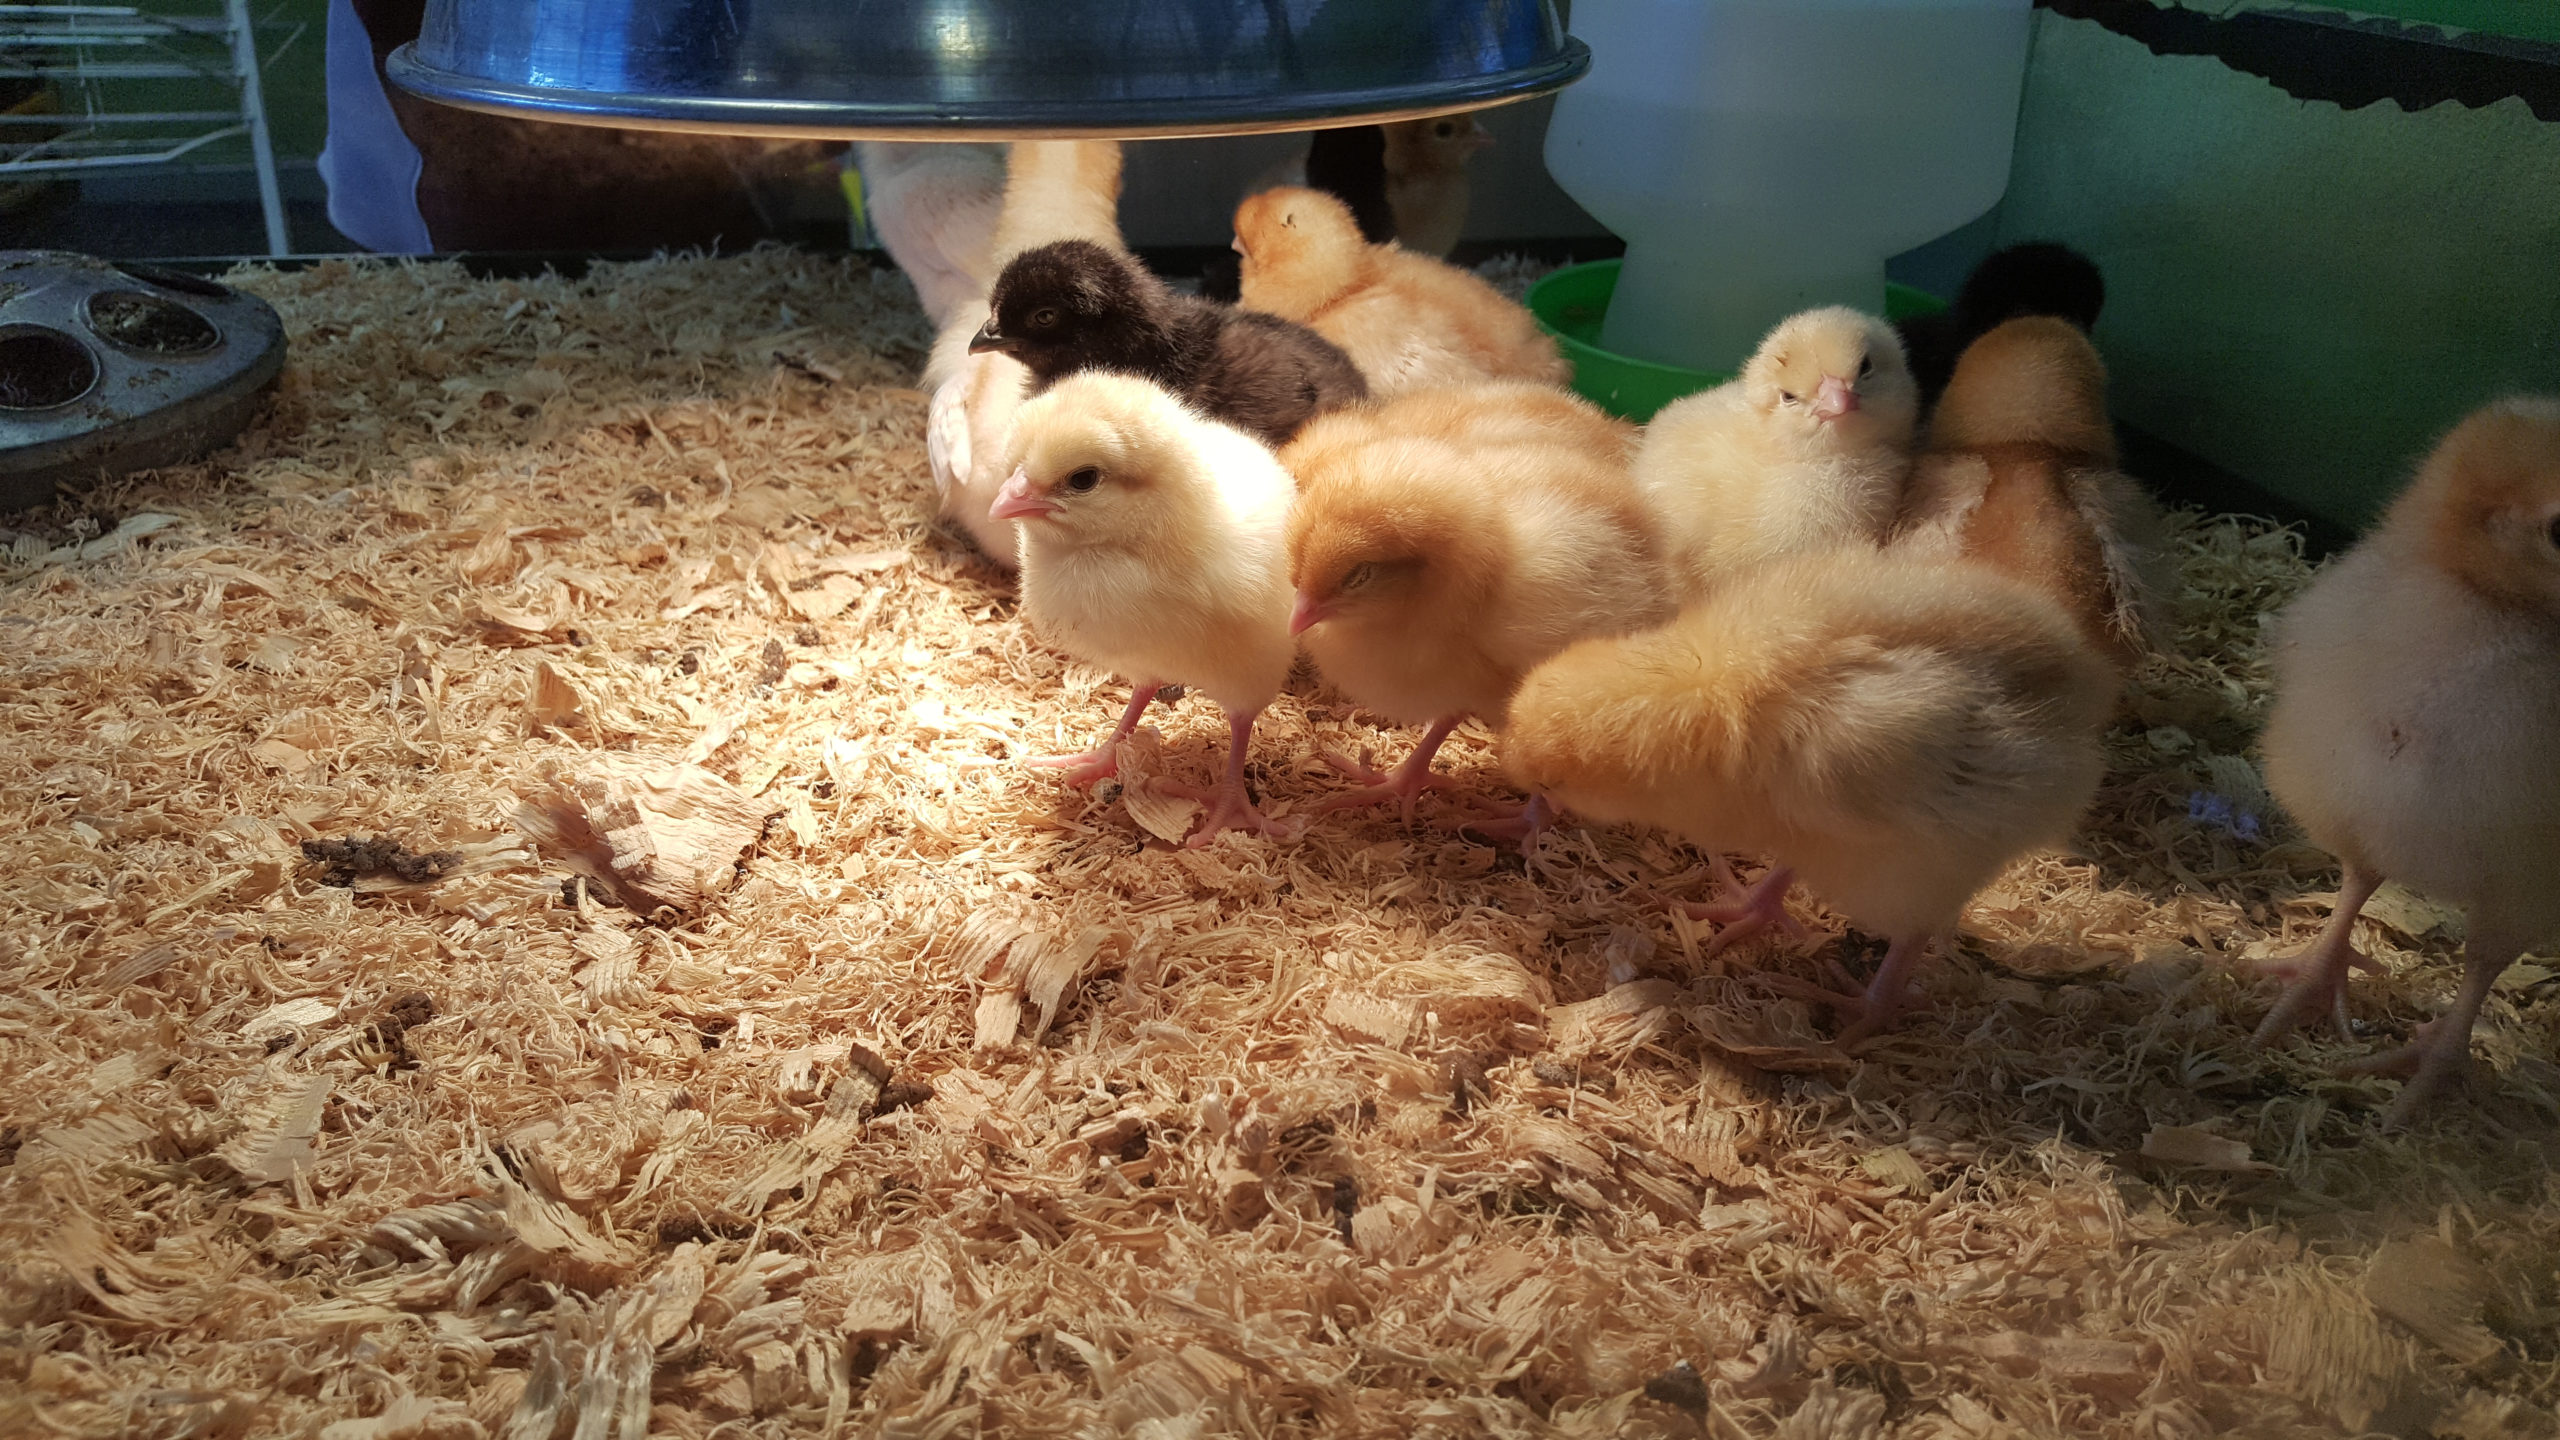 Baby chicks under heat lamp